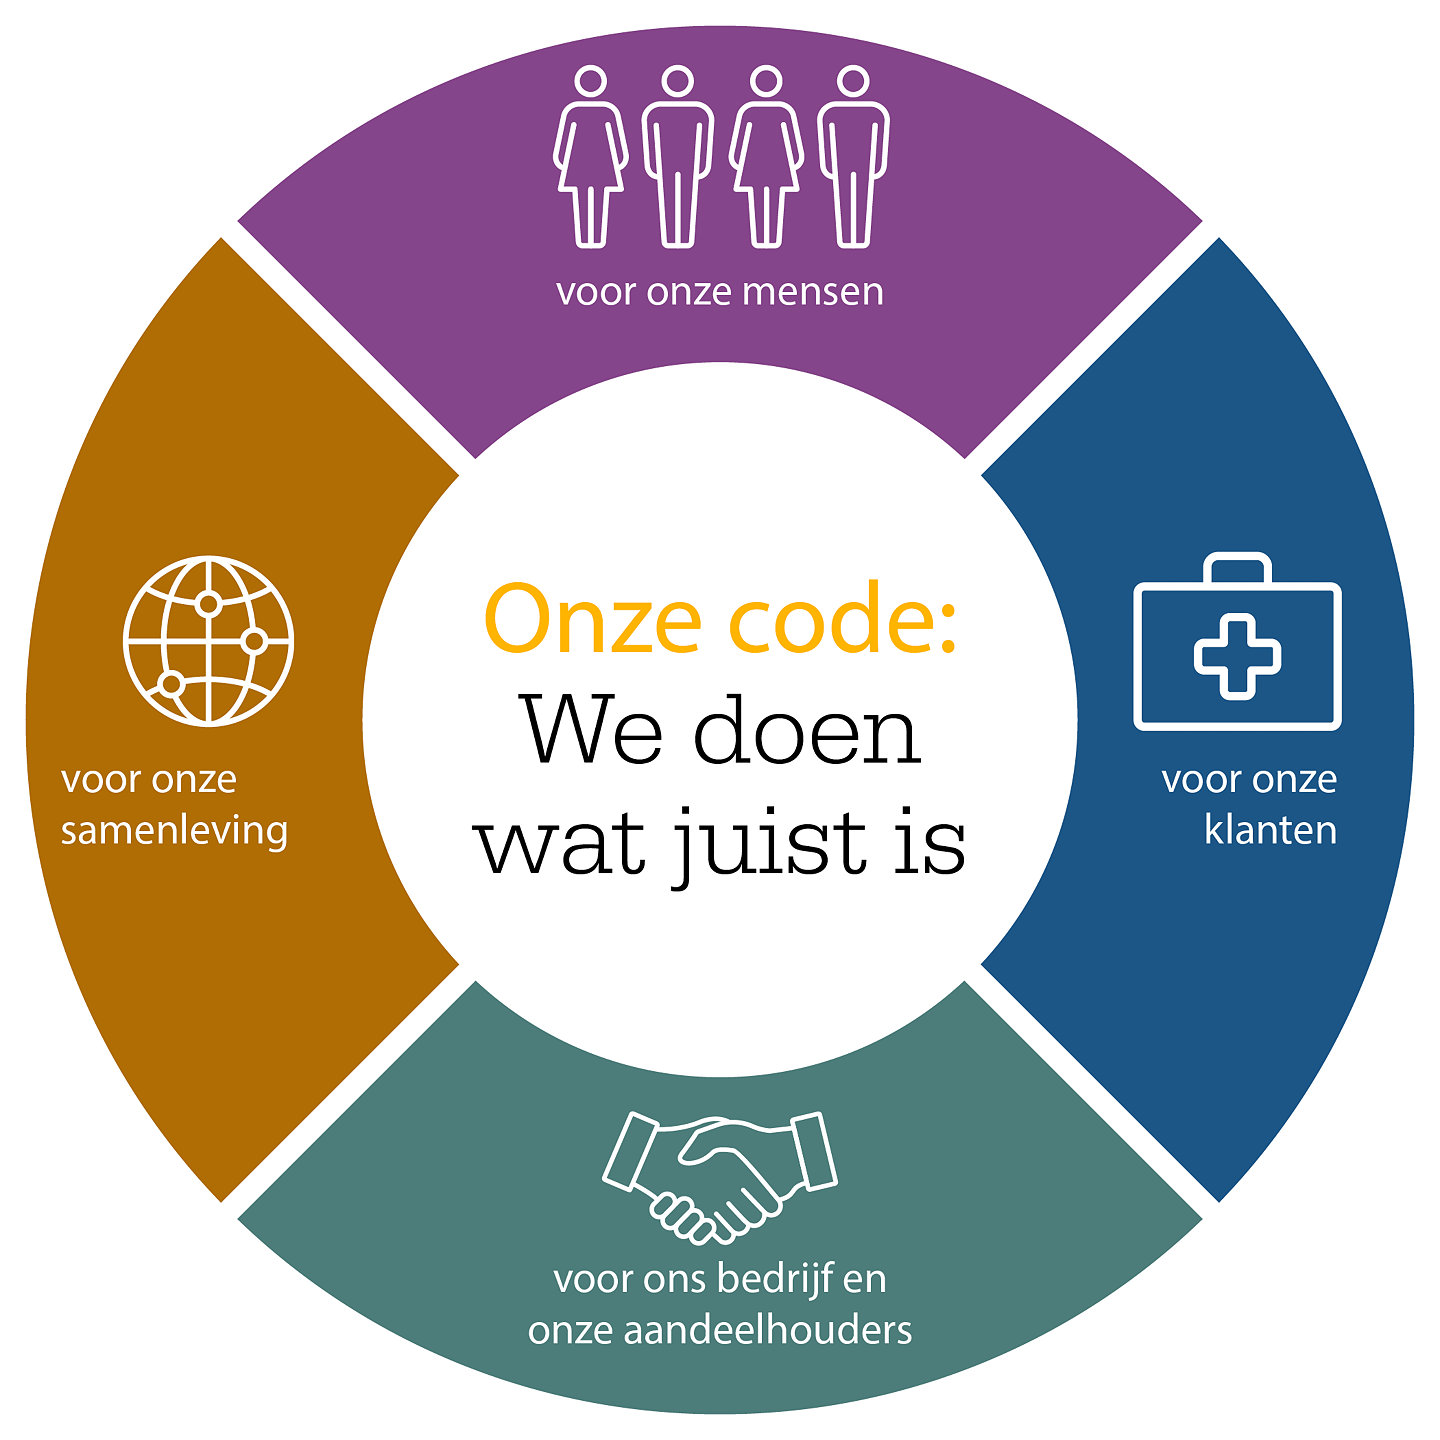 Onze code: We doen wat juist is